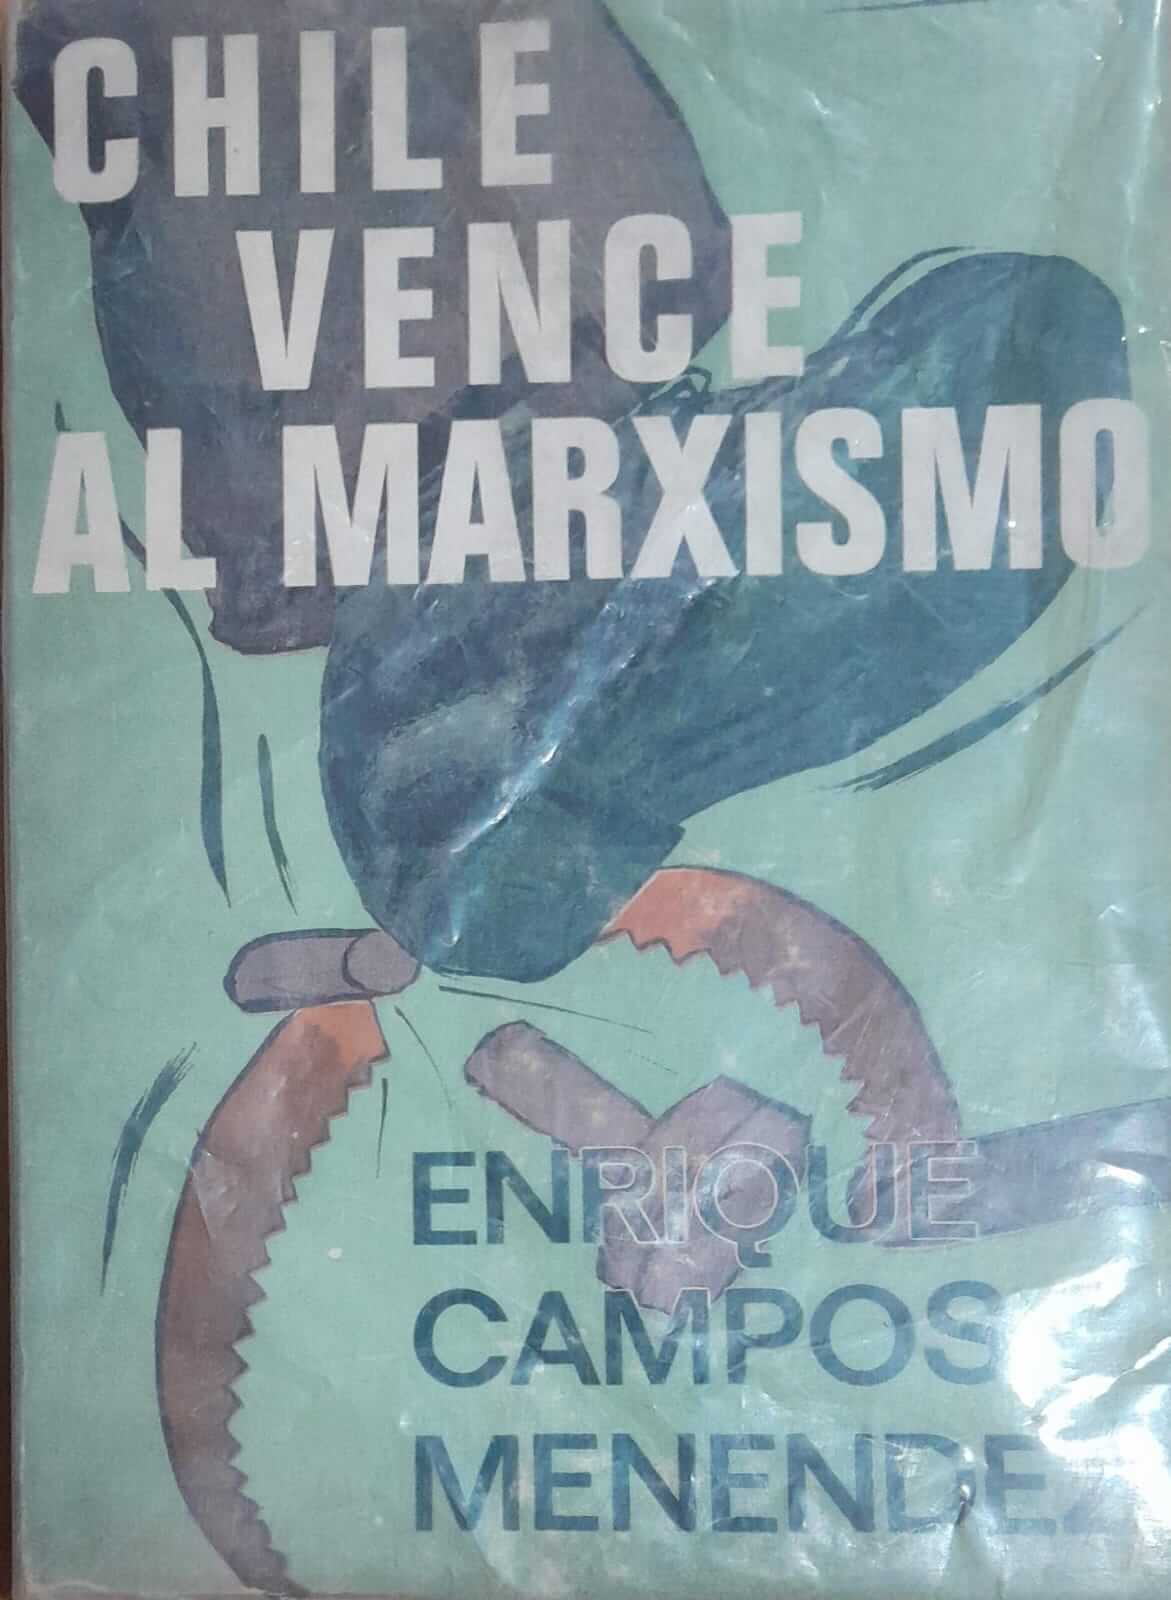 Chile vence al marxismo.